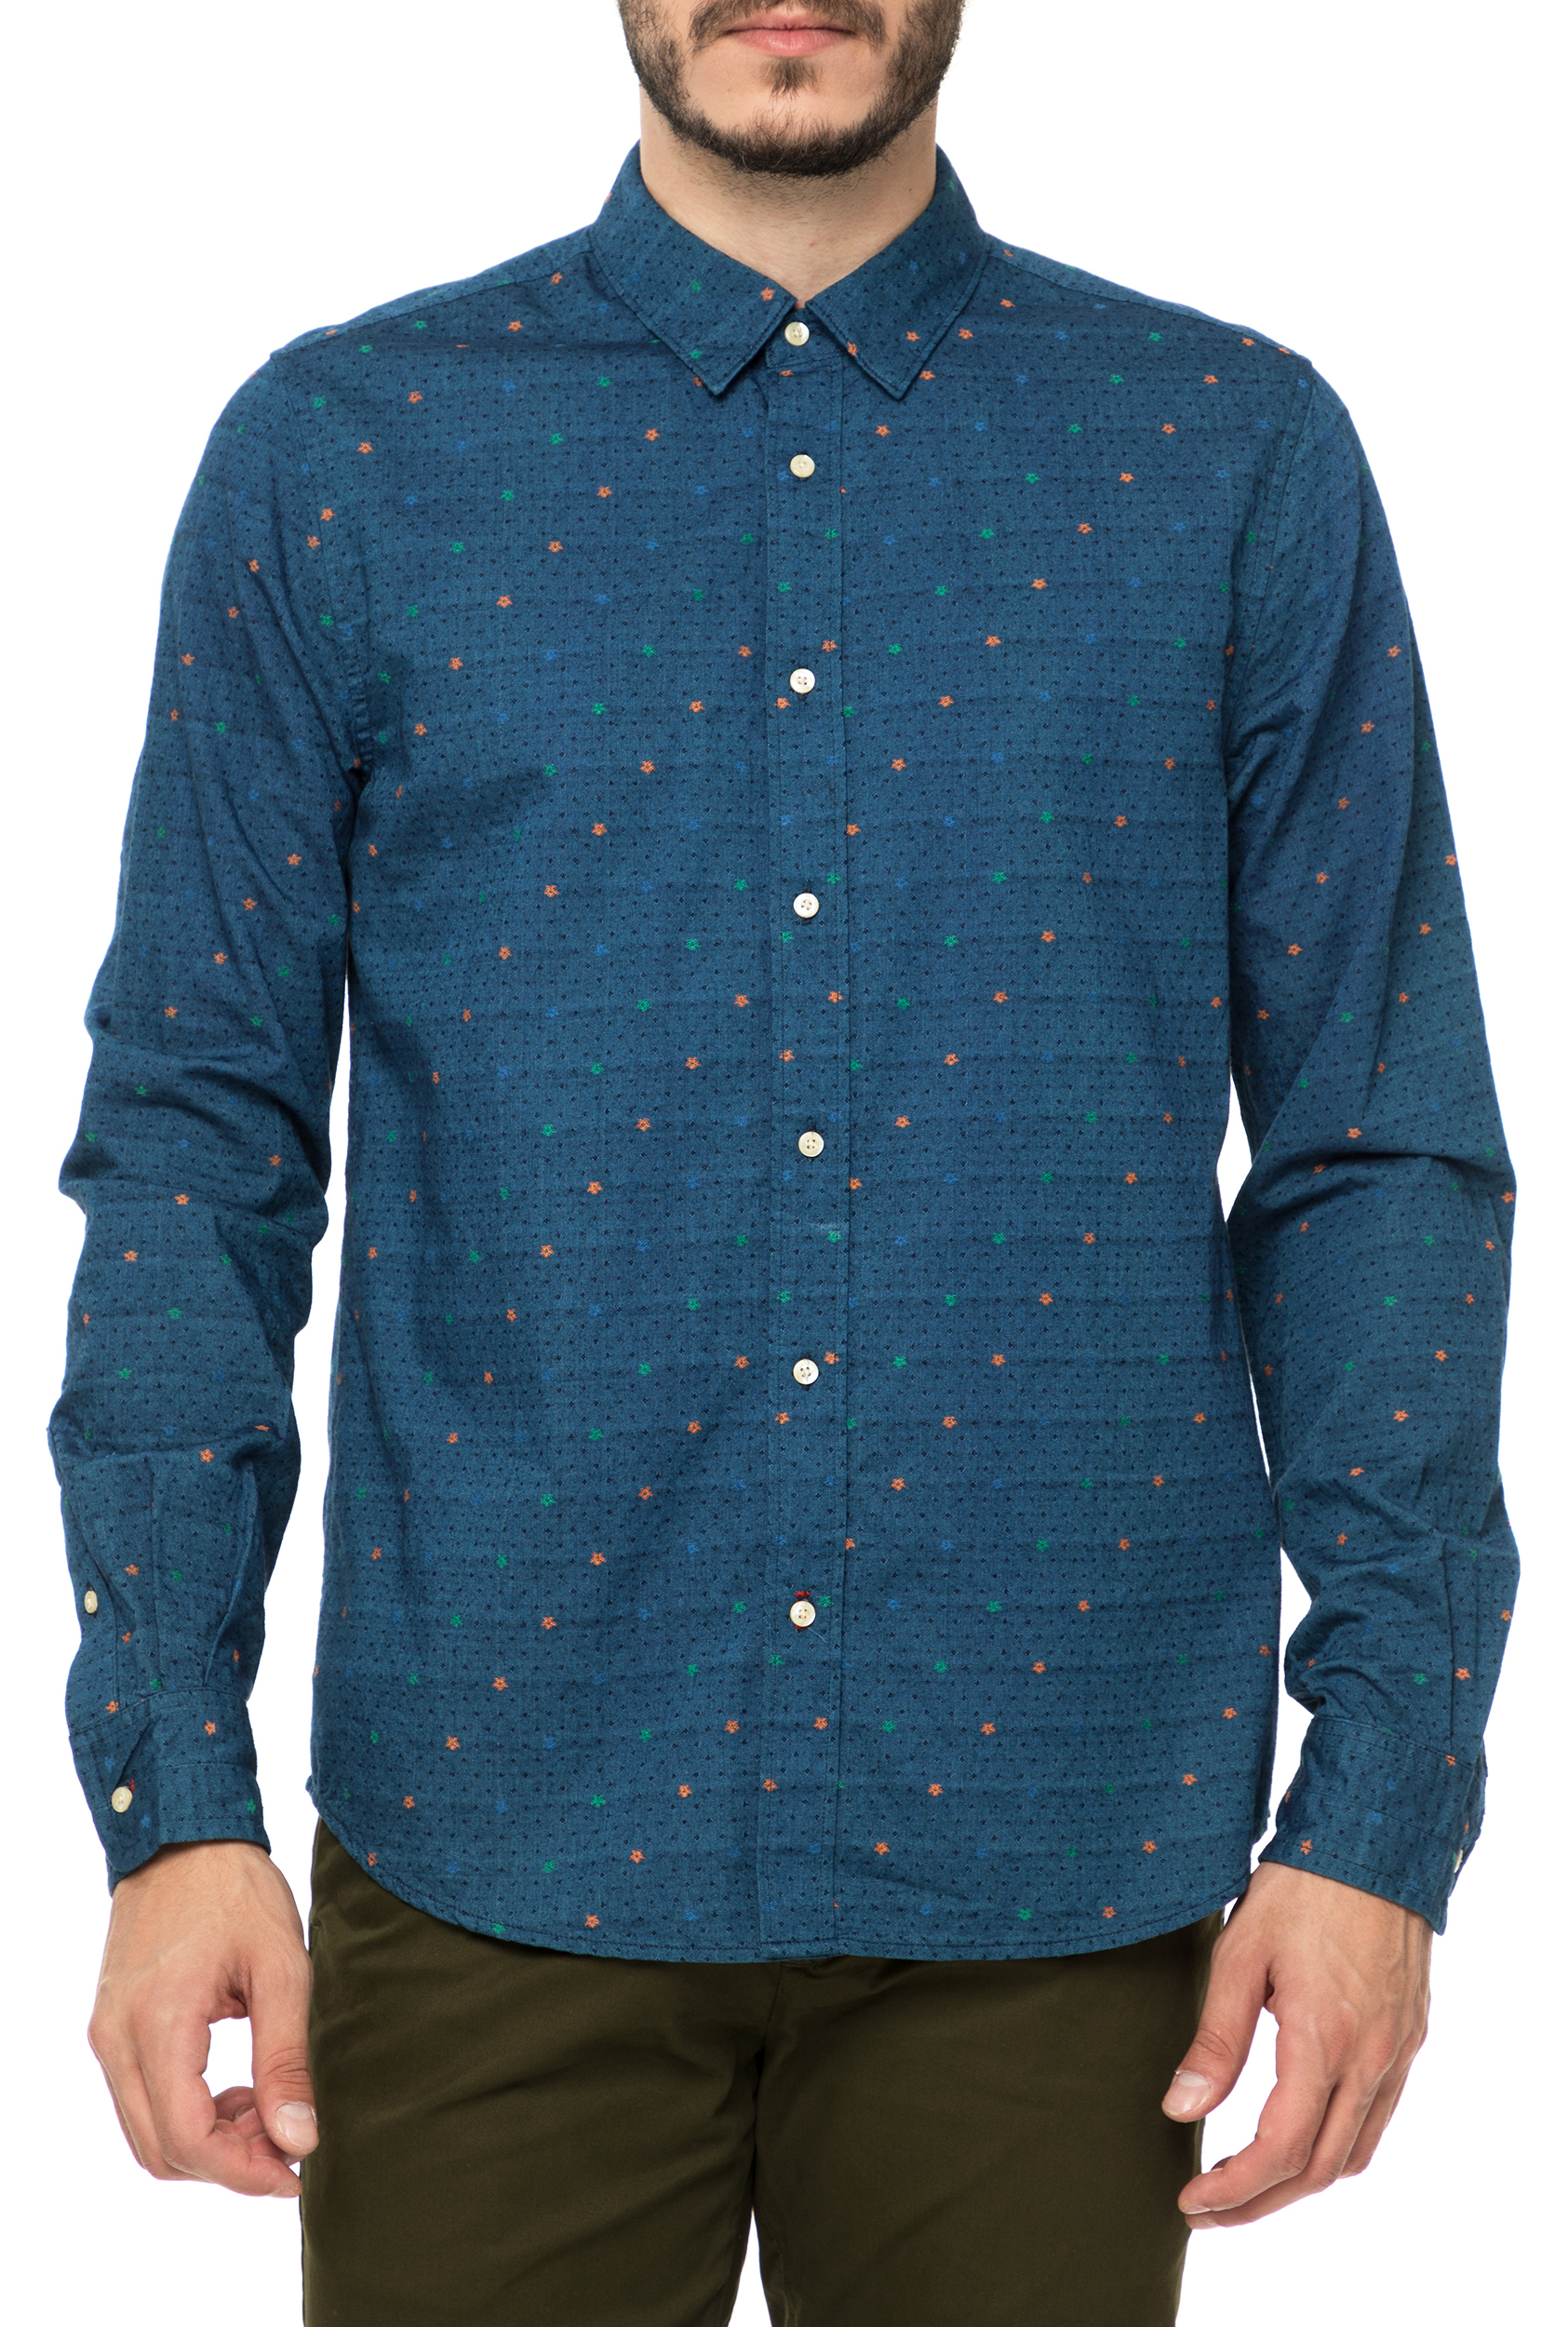 Ανδρικά/Ρούχα/Πουκάμισα/Μακρυμάνικα SCOTCH & SODA - Ανδρικό μακρυμάνικο πουκάμισο SCOTCH & SODA μπλε με μοτίβο